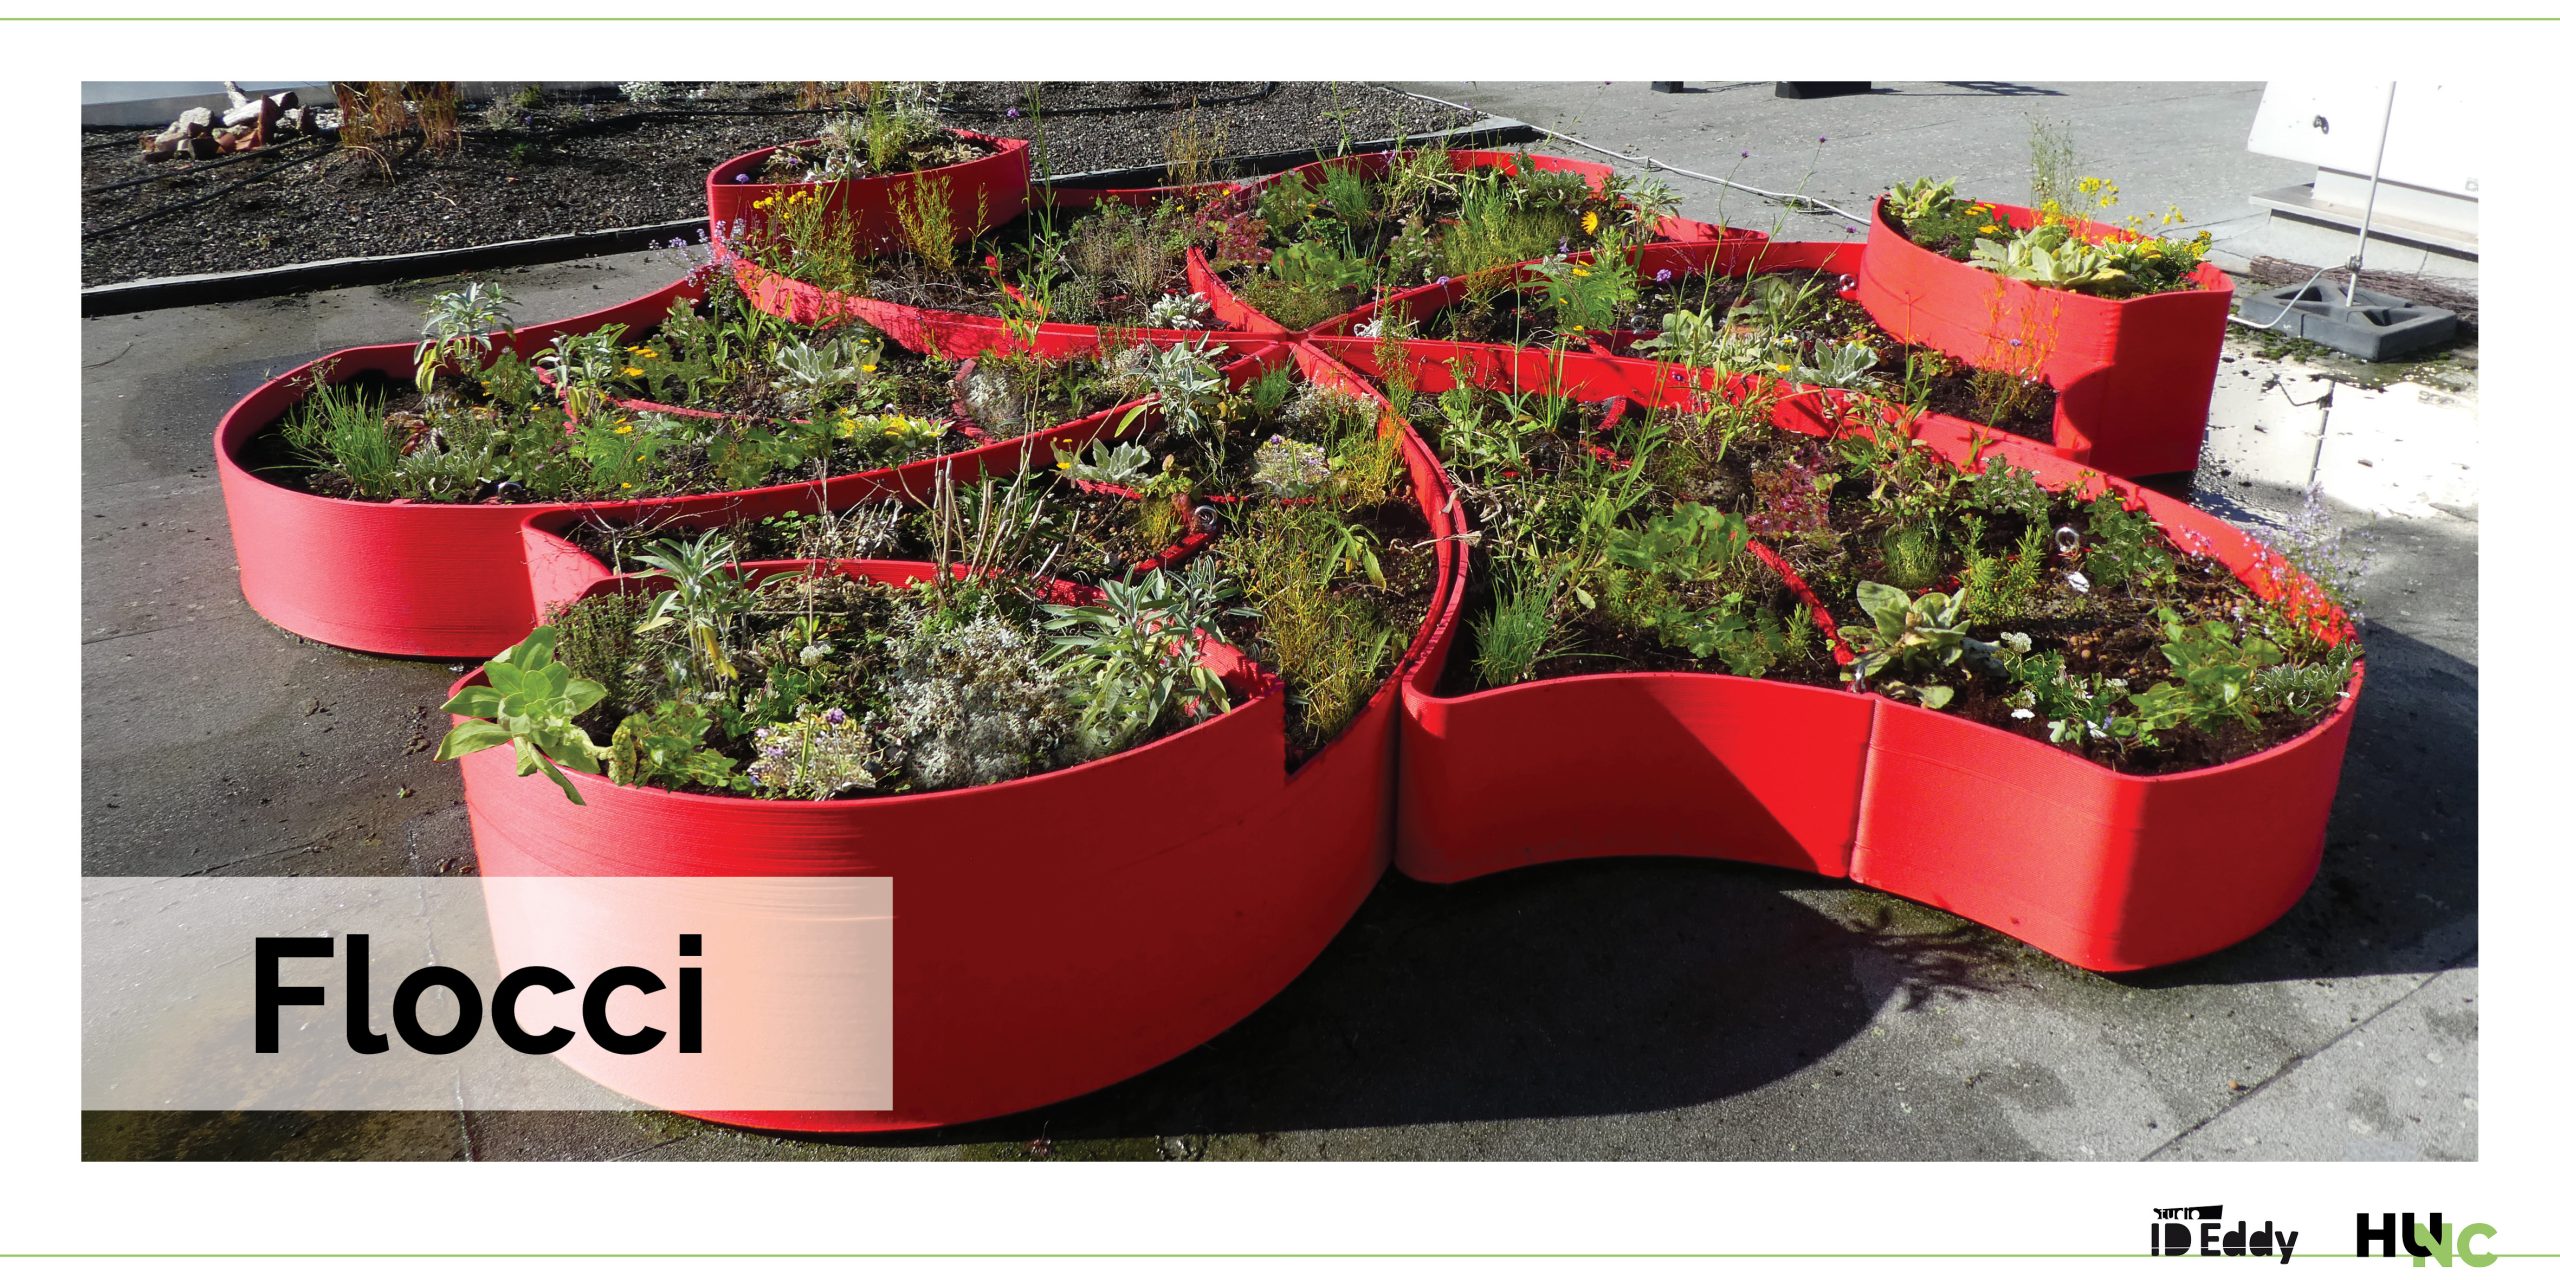 Flocci 3D printed planter